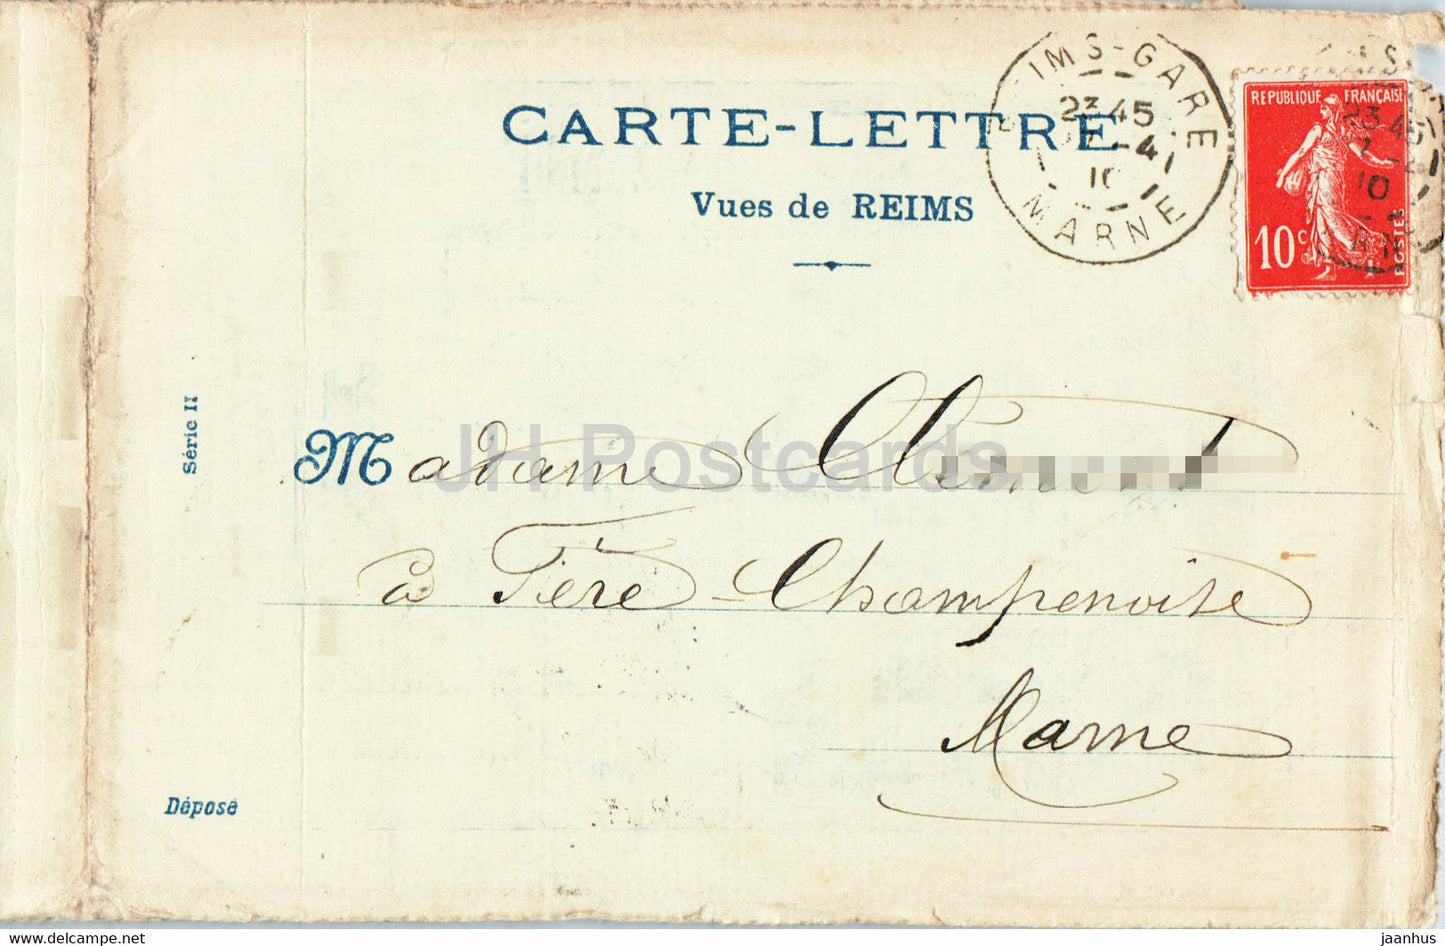 Reims - Place des Marches - Modes A la Glaneuse - alte Postkarte - 1910 - Frankreich - gebraucht